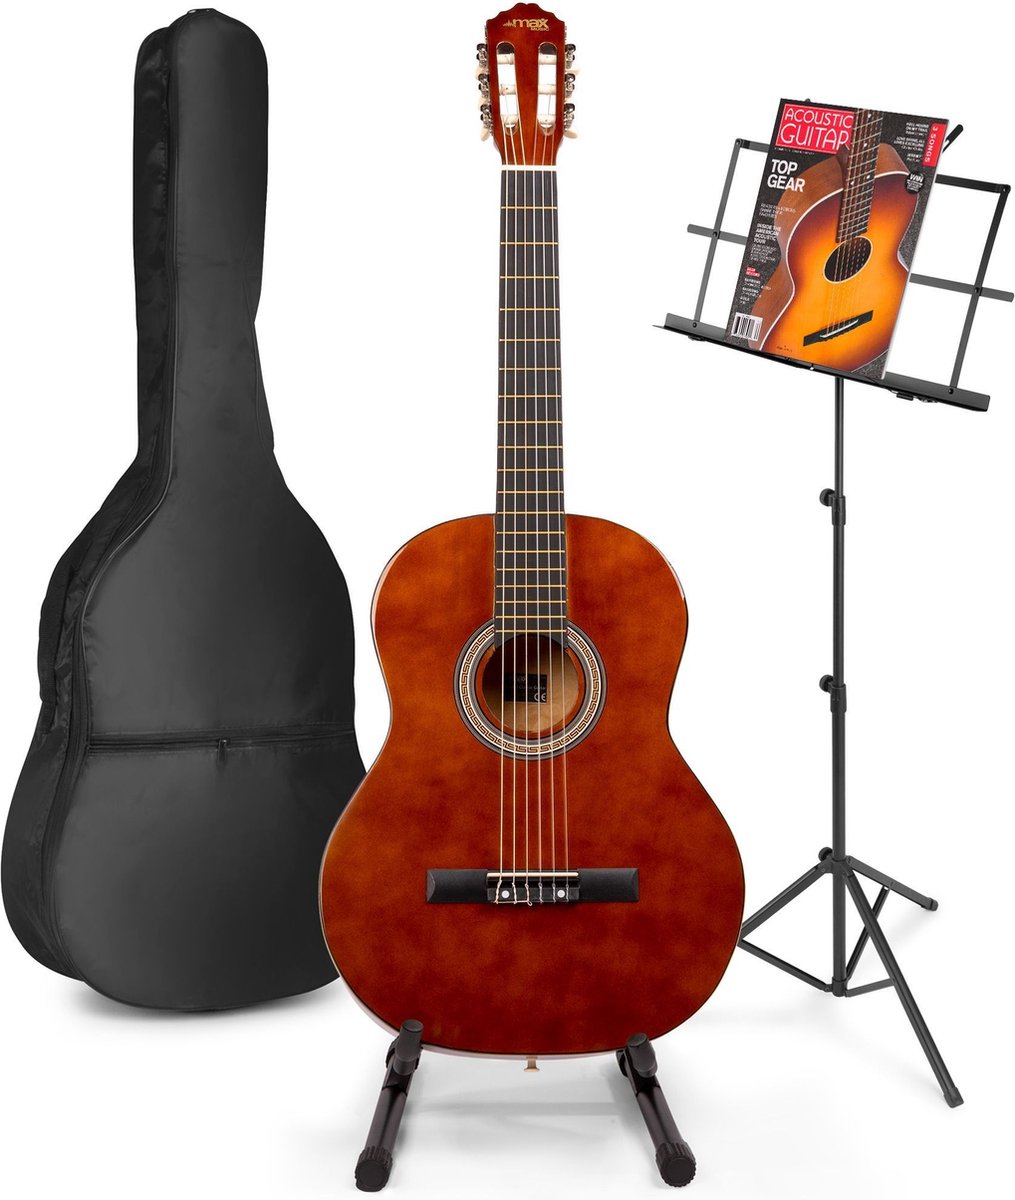 Akoestische gitaar voor beginners - MAX SoloArt klassieke gitaar / Spaanse gitaar met o.a. 39'' gitaar, gitaar standaard, muziekstandaard, gitaartas, gitaar stemapparaat en extra accessoires - Bruin (hout)